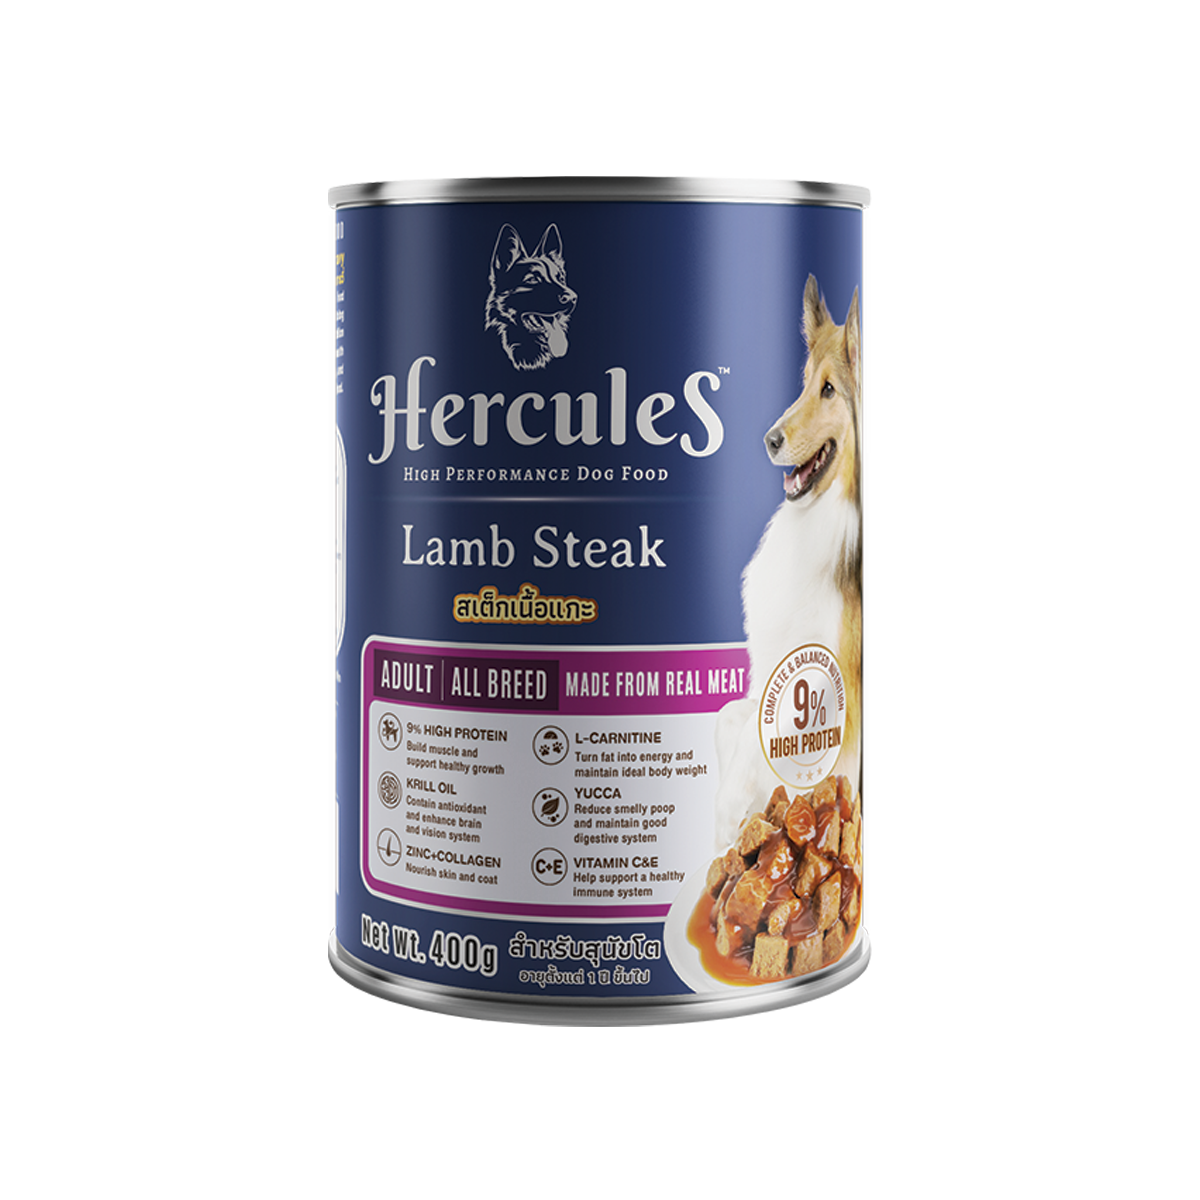 Hercules Can Adult All Breed Lamb Steak Flavor เฮอร์คิวลิส อาหารสำหรับสุนัขโต สูตรสเต็กเนื้อแกะ ขนาด 400 กรัม (12 กระป๋อง)